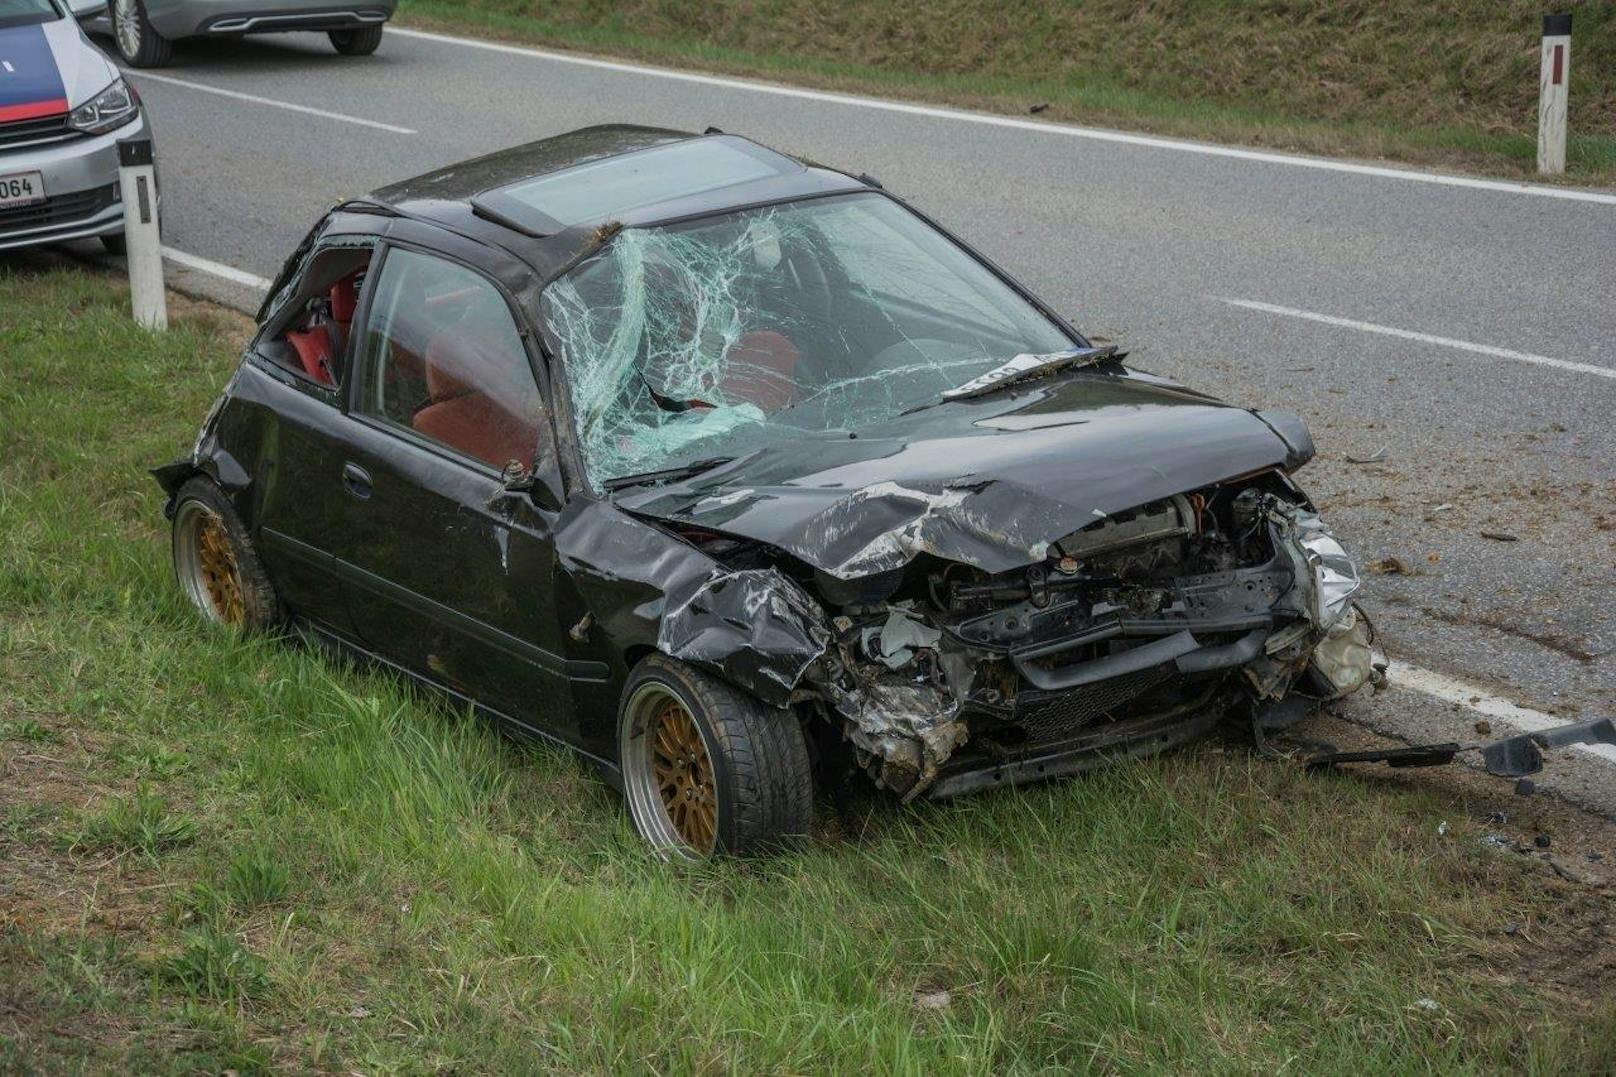 Das Auto ist zerstört, dem Fahrer dürfte es gut gehen - er wollte sich nicht untersuchen lassen.